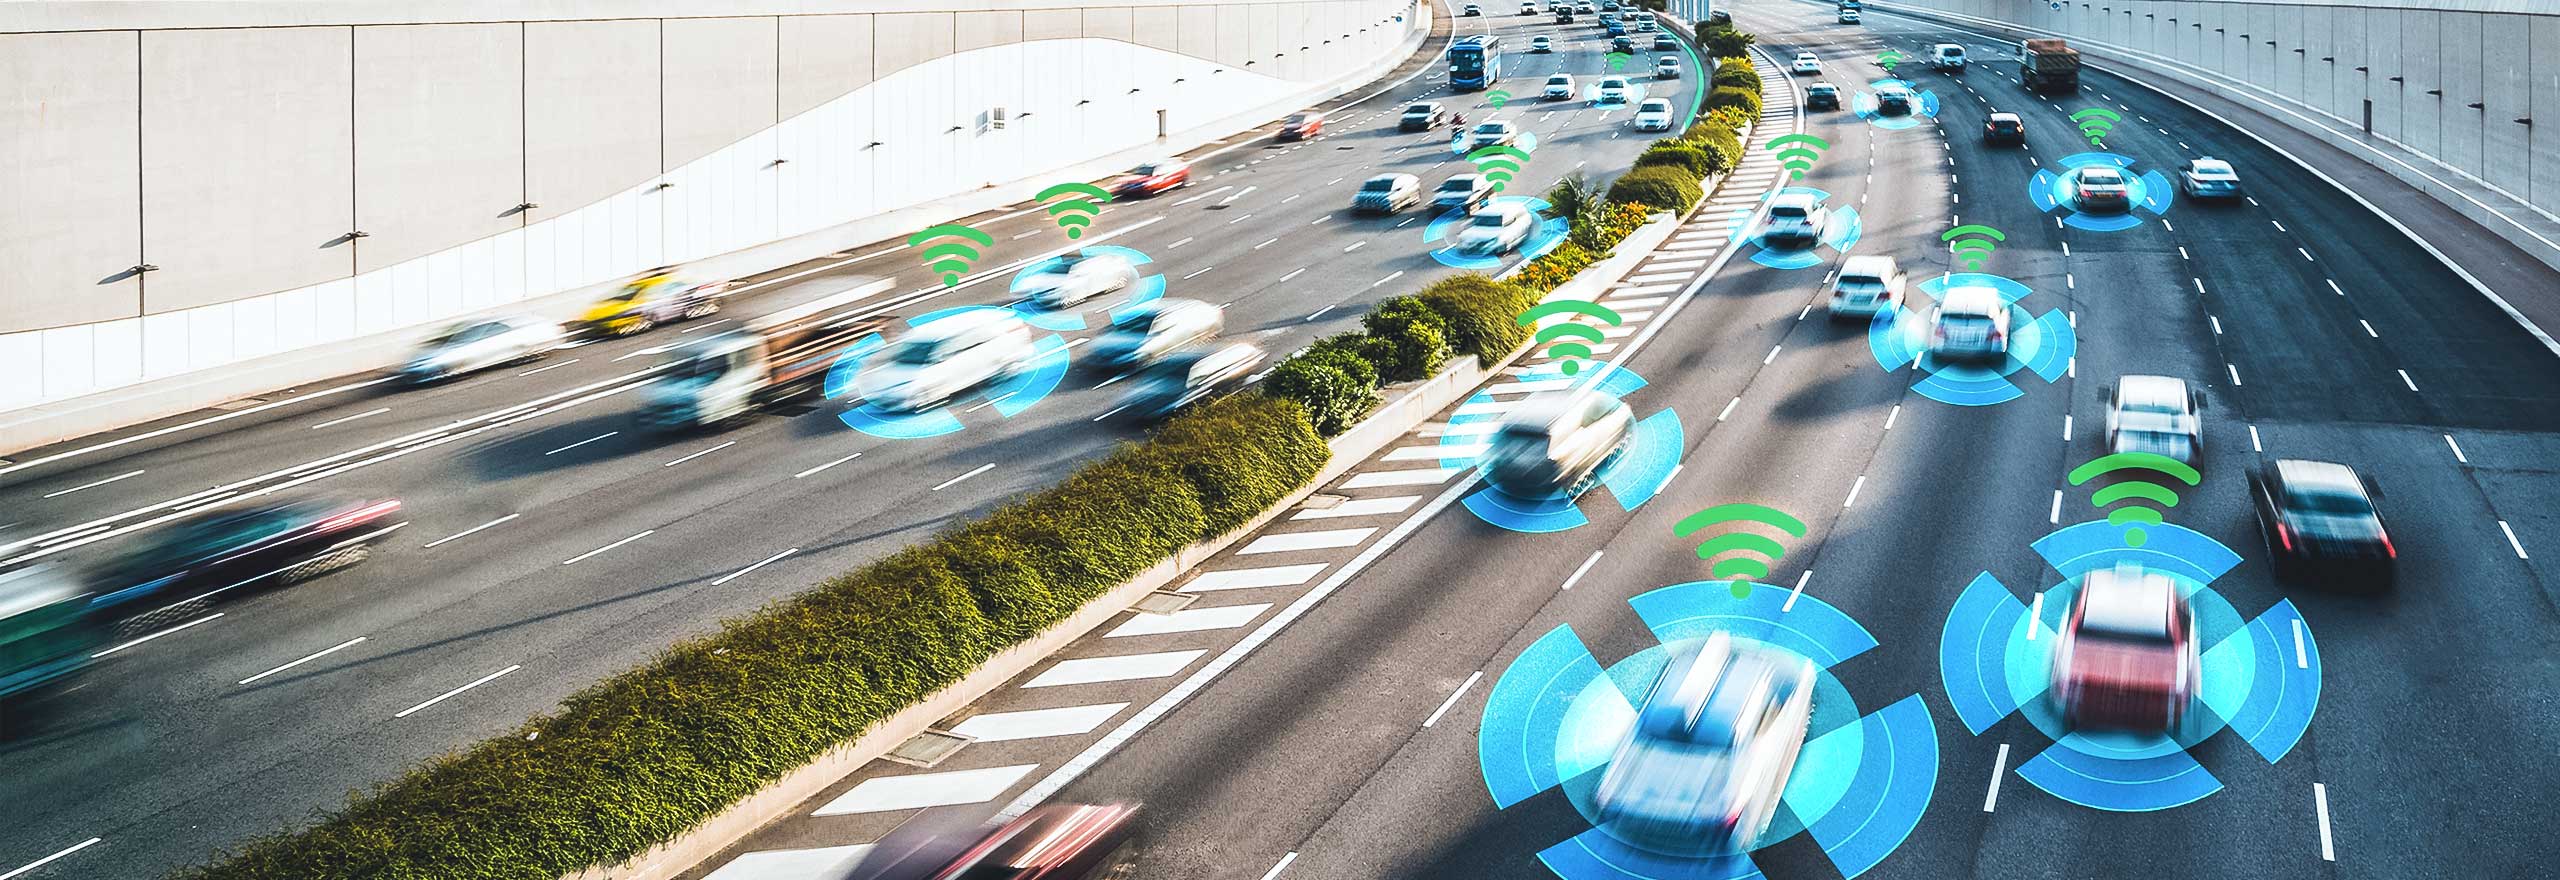 Coches en una autopista analizados por las soluciones de percepción de vehículos autónomos de Hexagon